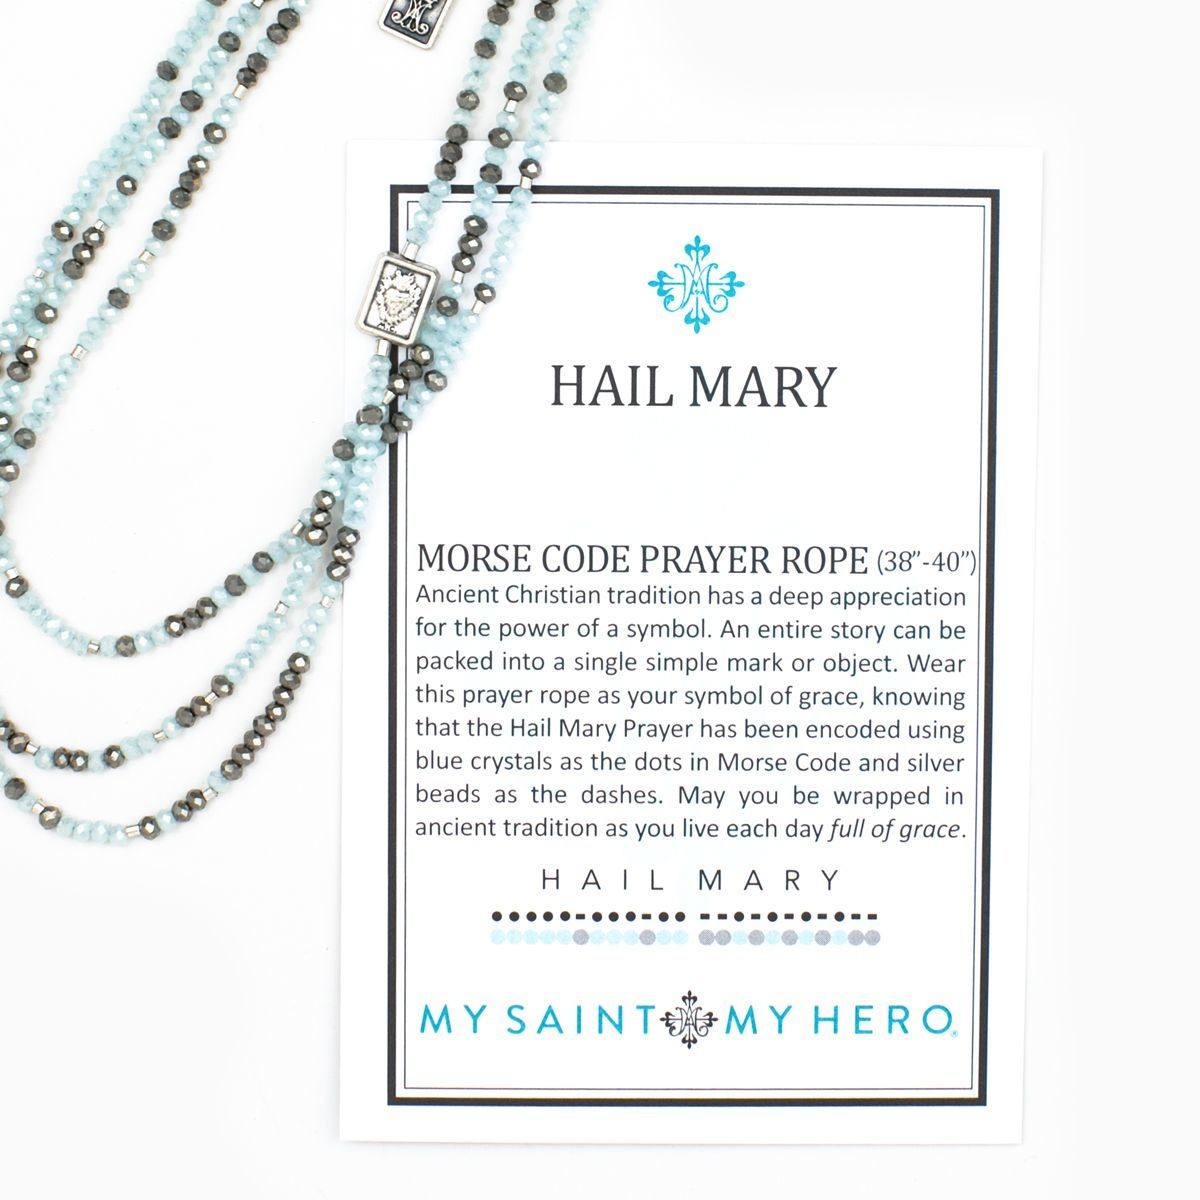 Hail Mary Morse Code Prayer Rope